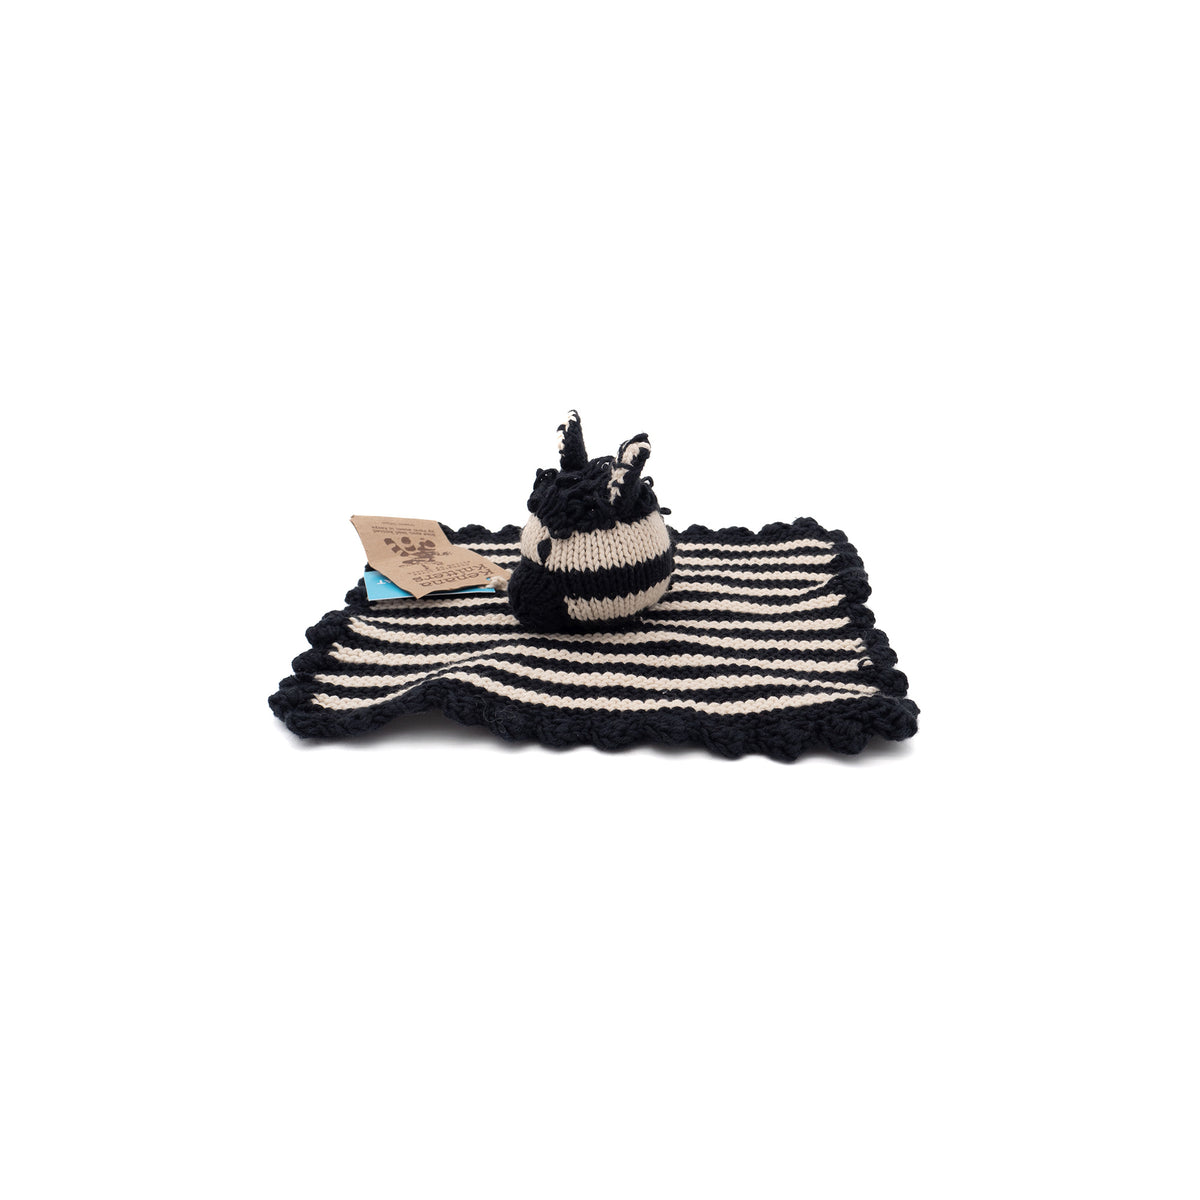 Zebra Knuffeltier Bio-Baumwolle Kuscheltier Cream Black Comforter